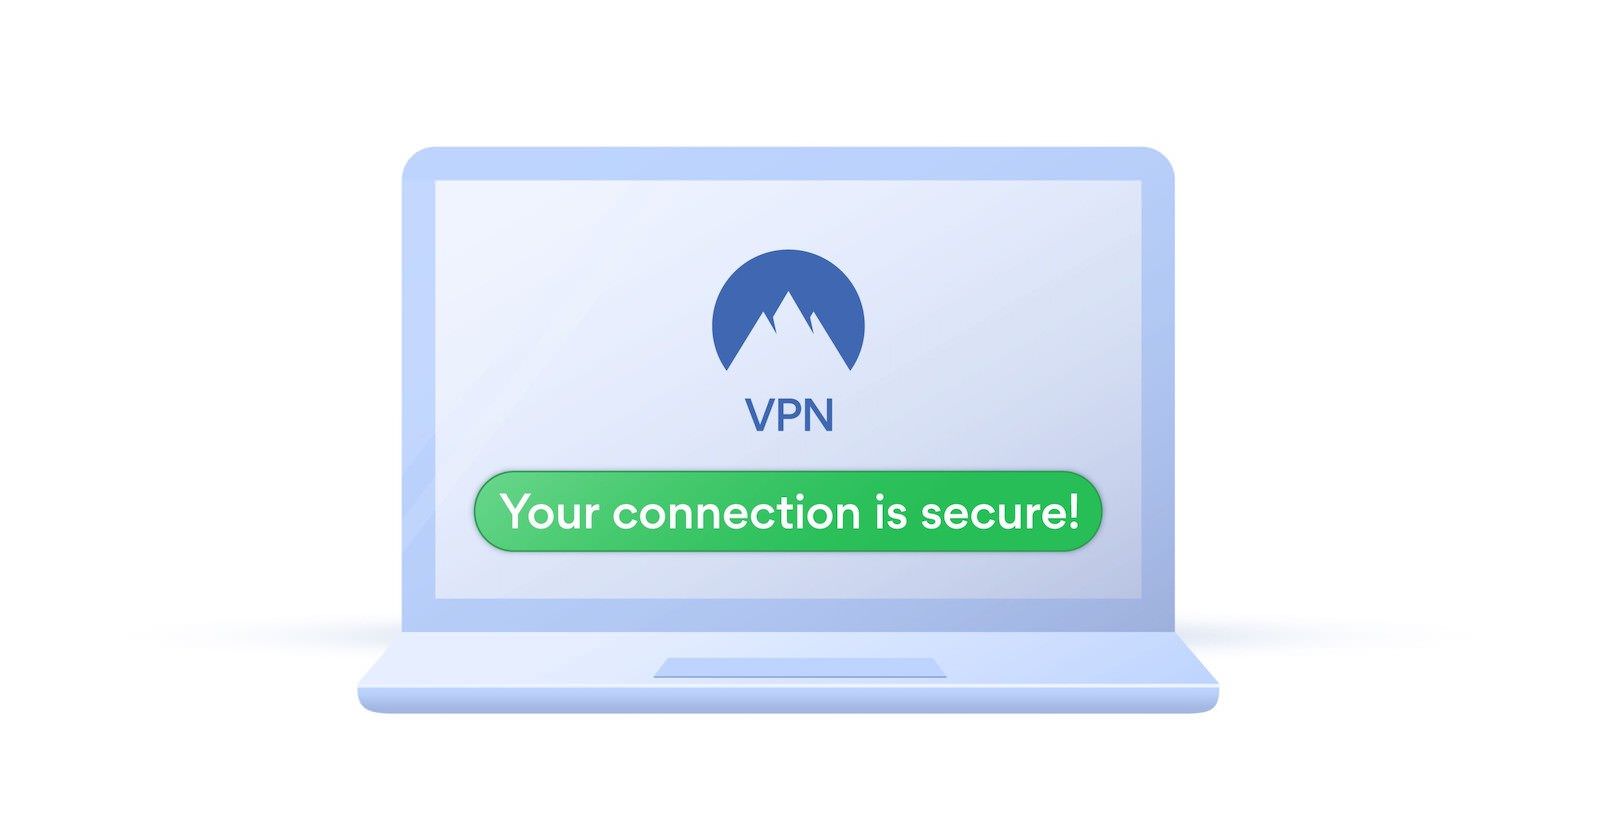 VPN Illustration - Secure Connection